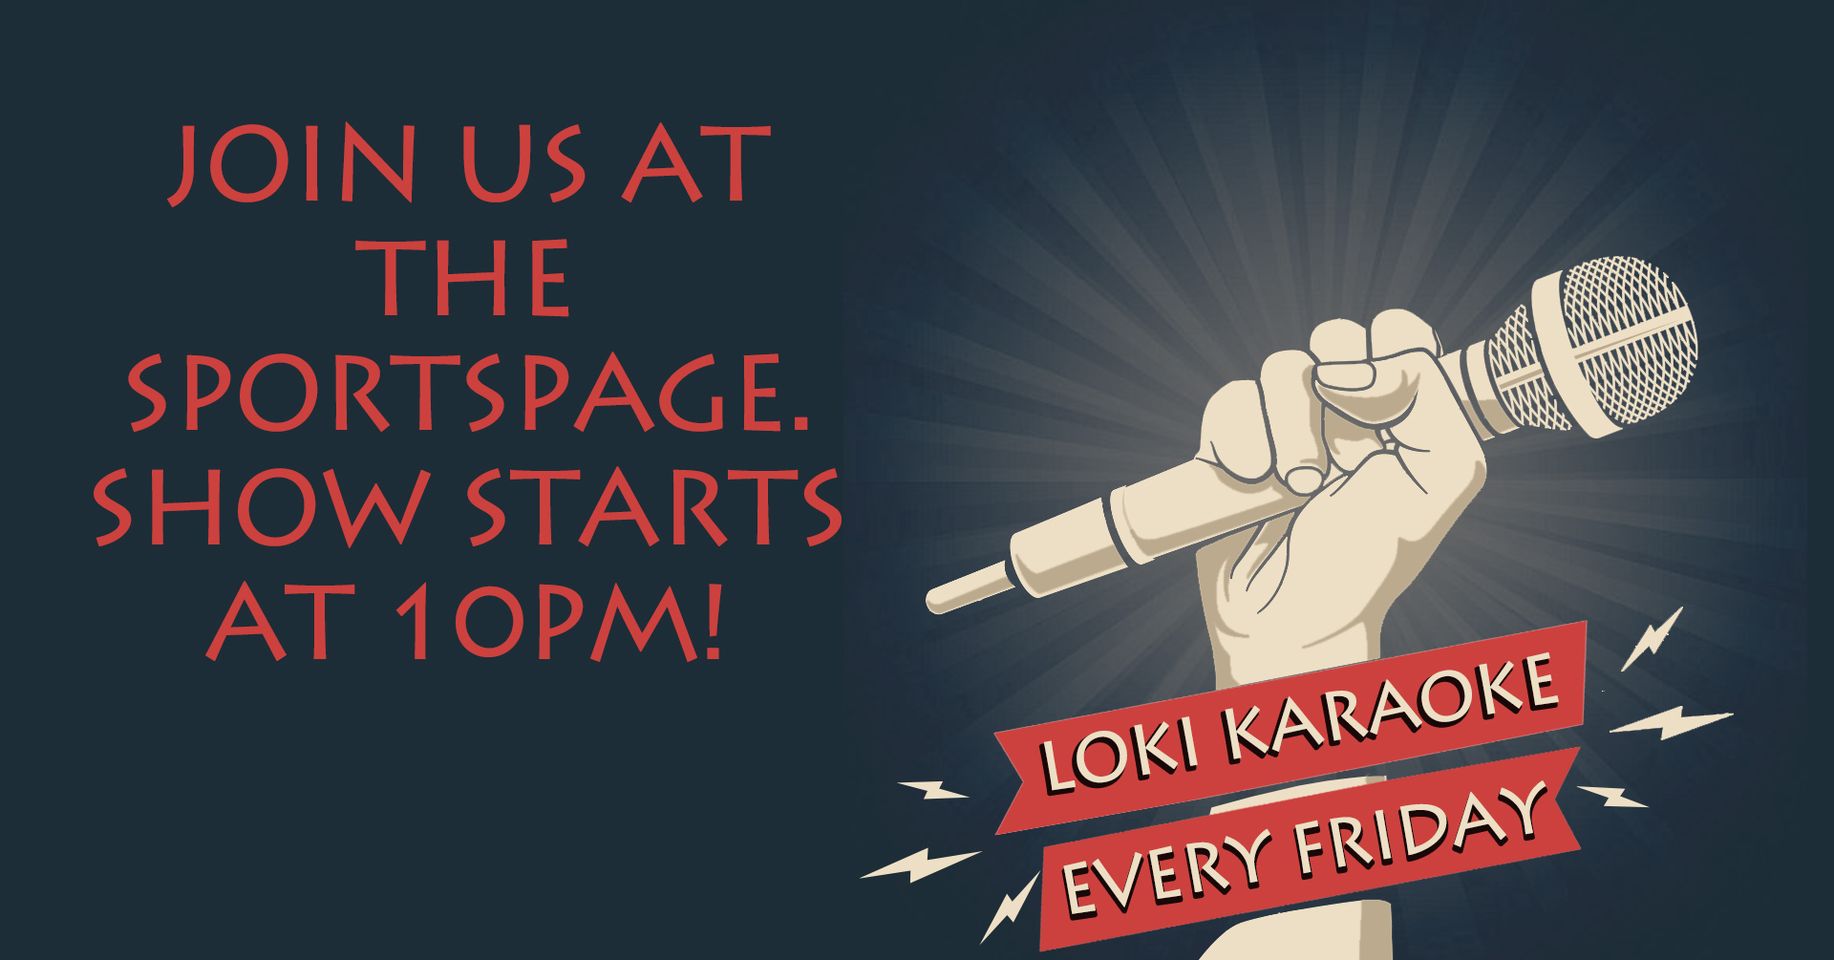 Loki Karaoke